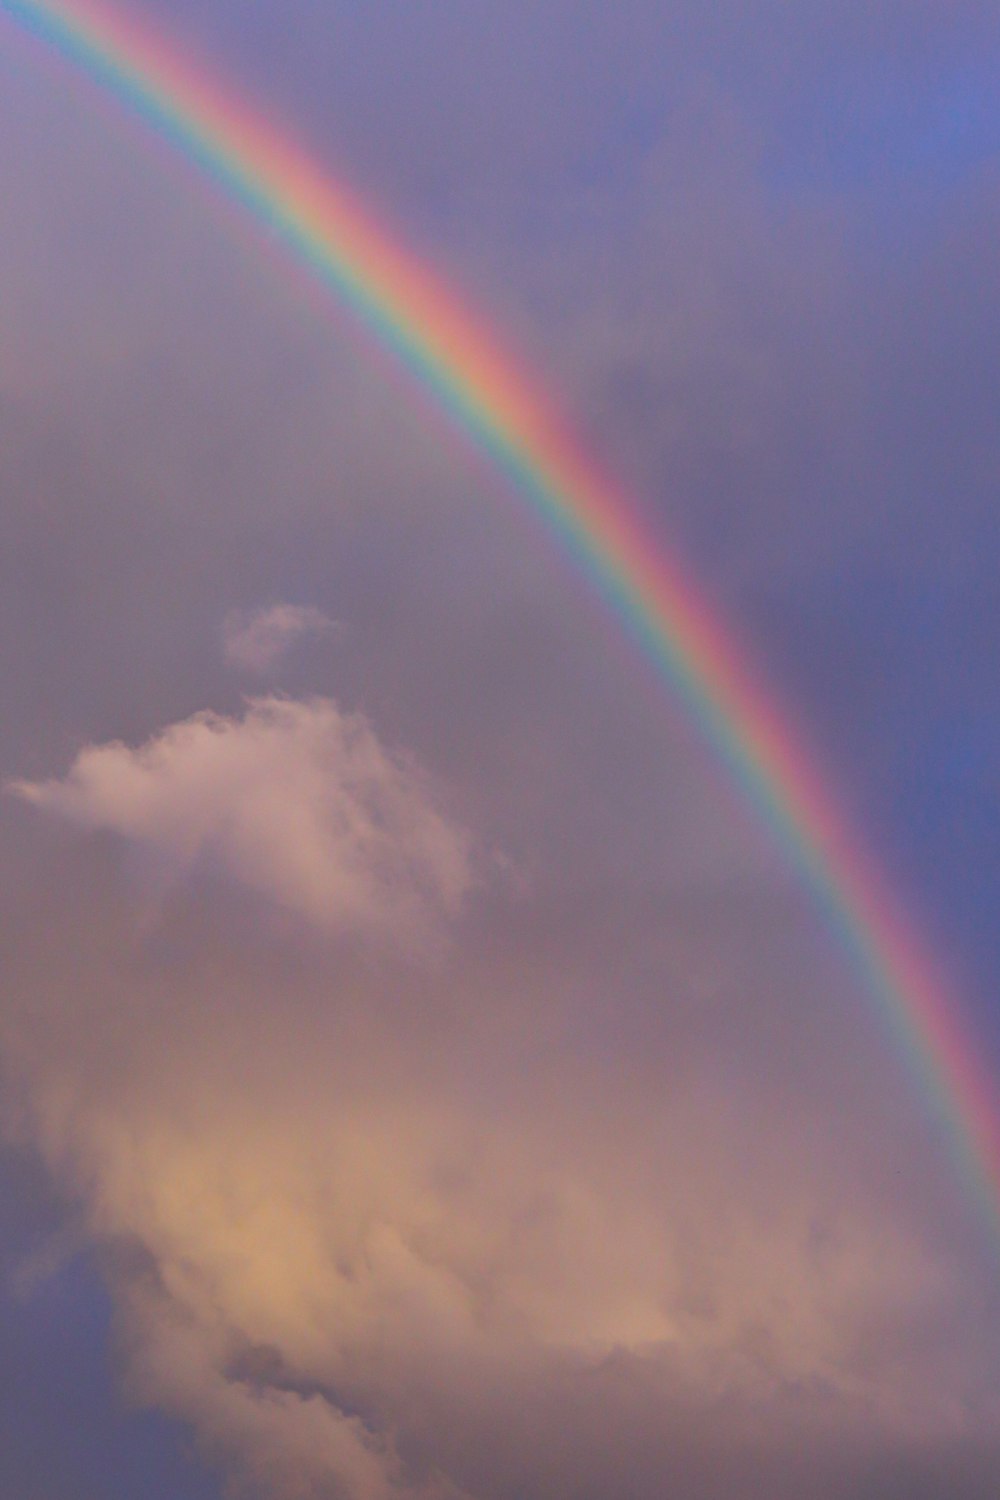 Um arco-íris duplo em um céu nublado